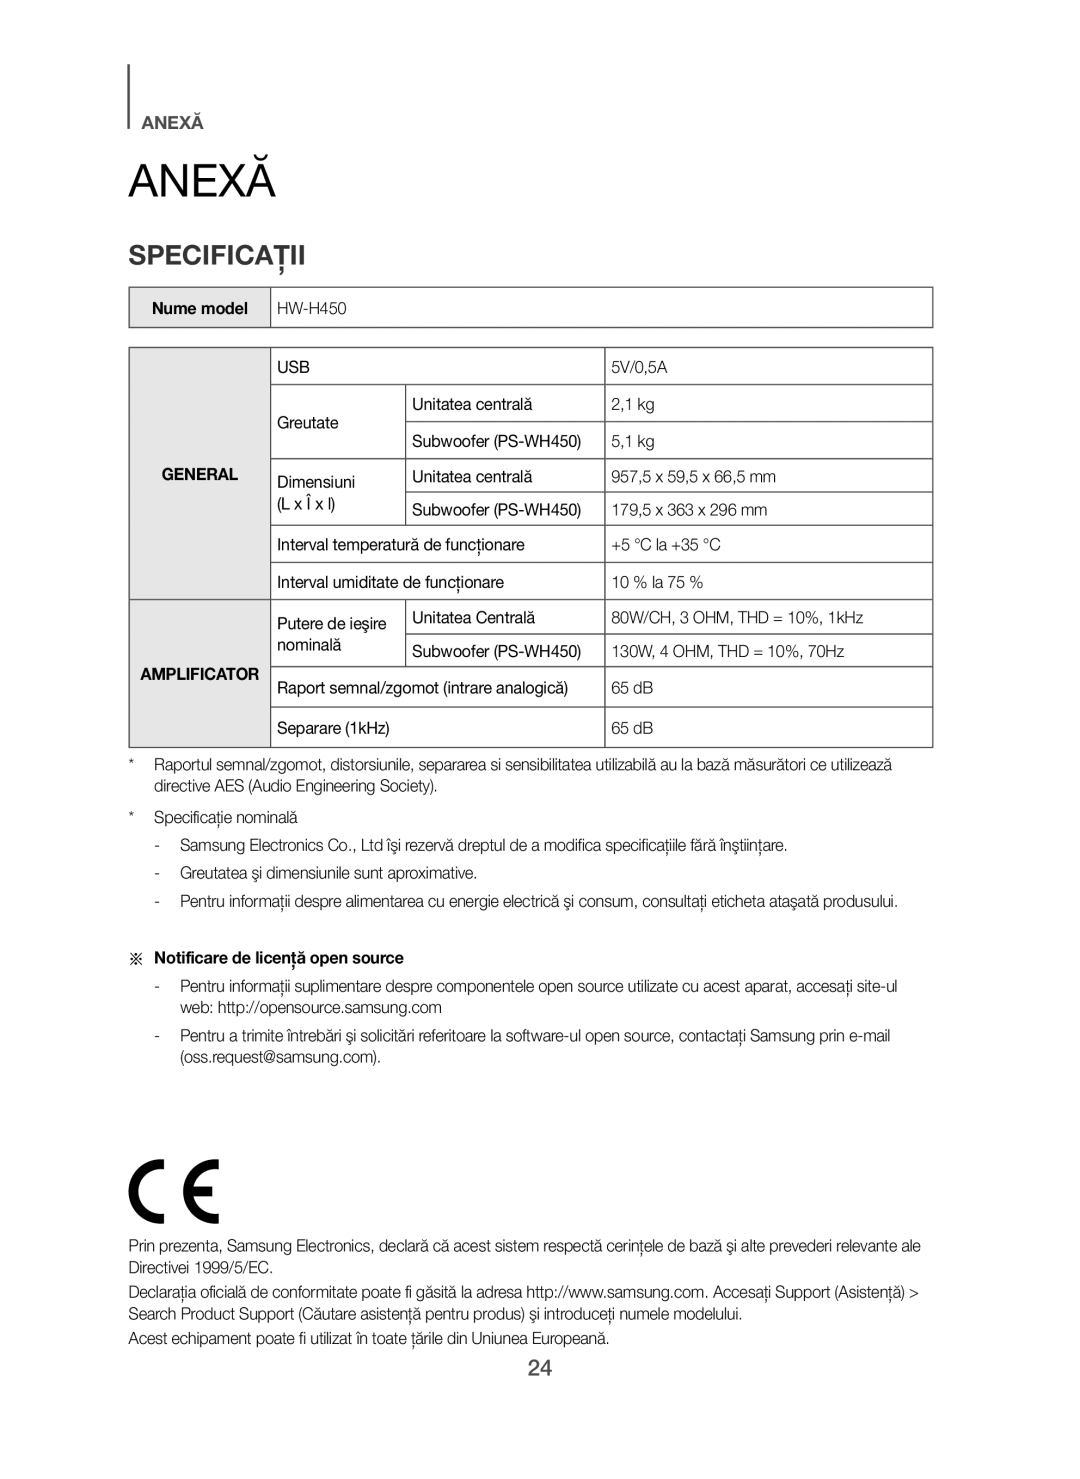 Samsung HW-H450/XE manual Anexă, Specificaţii, Nume model, Greutate Unitatea centrală, Notificare de licenţă open source 